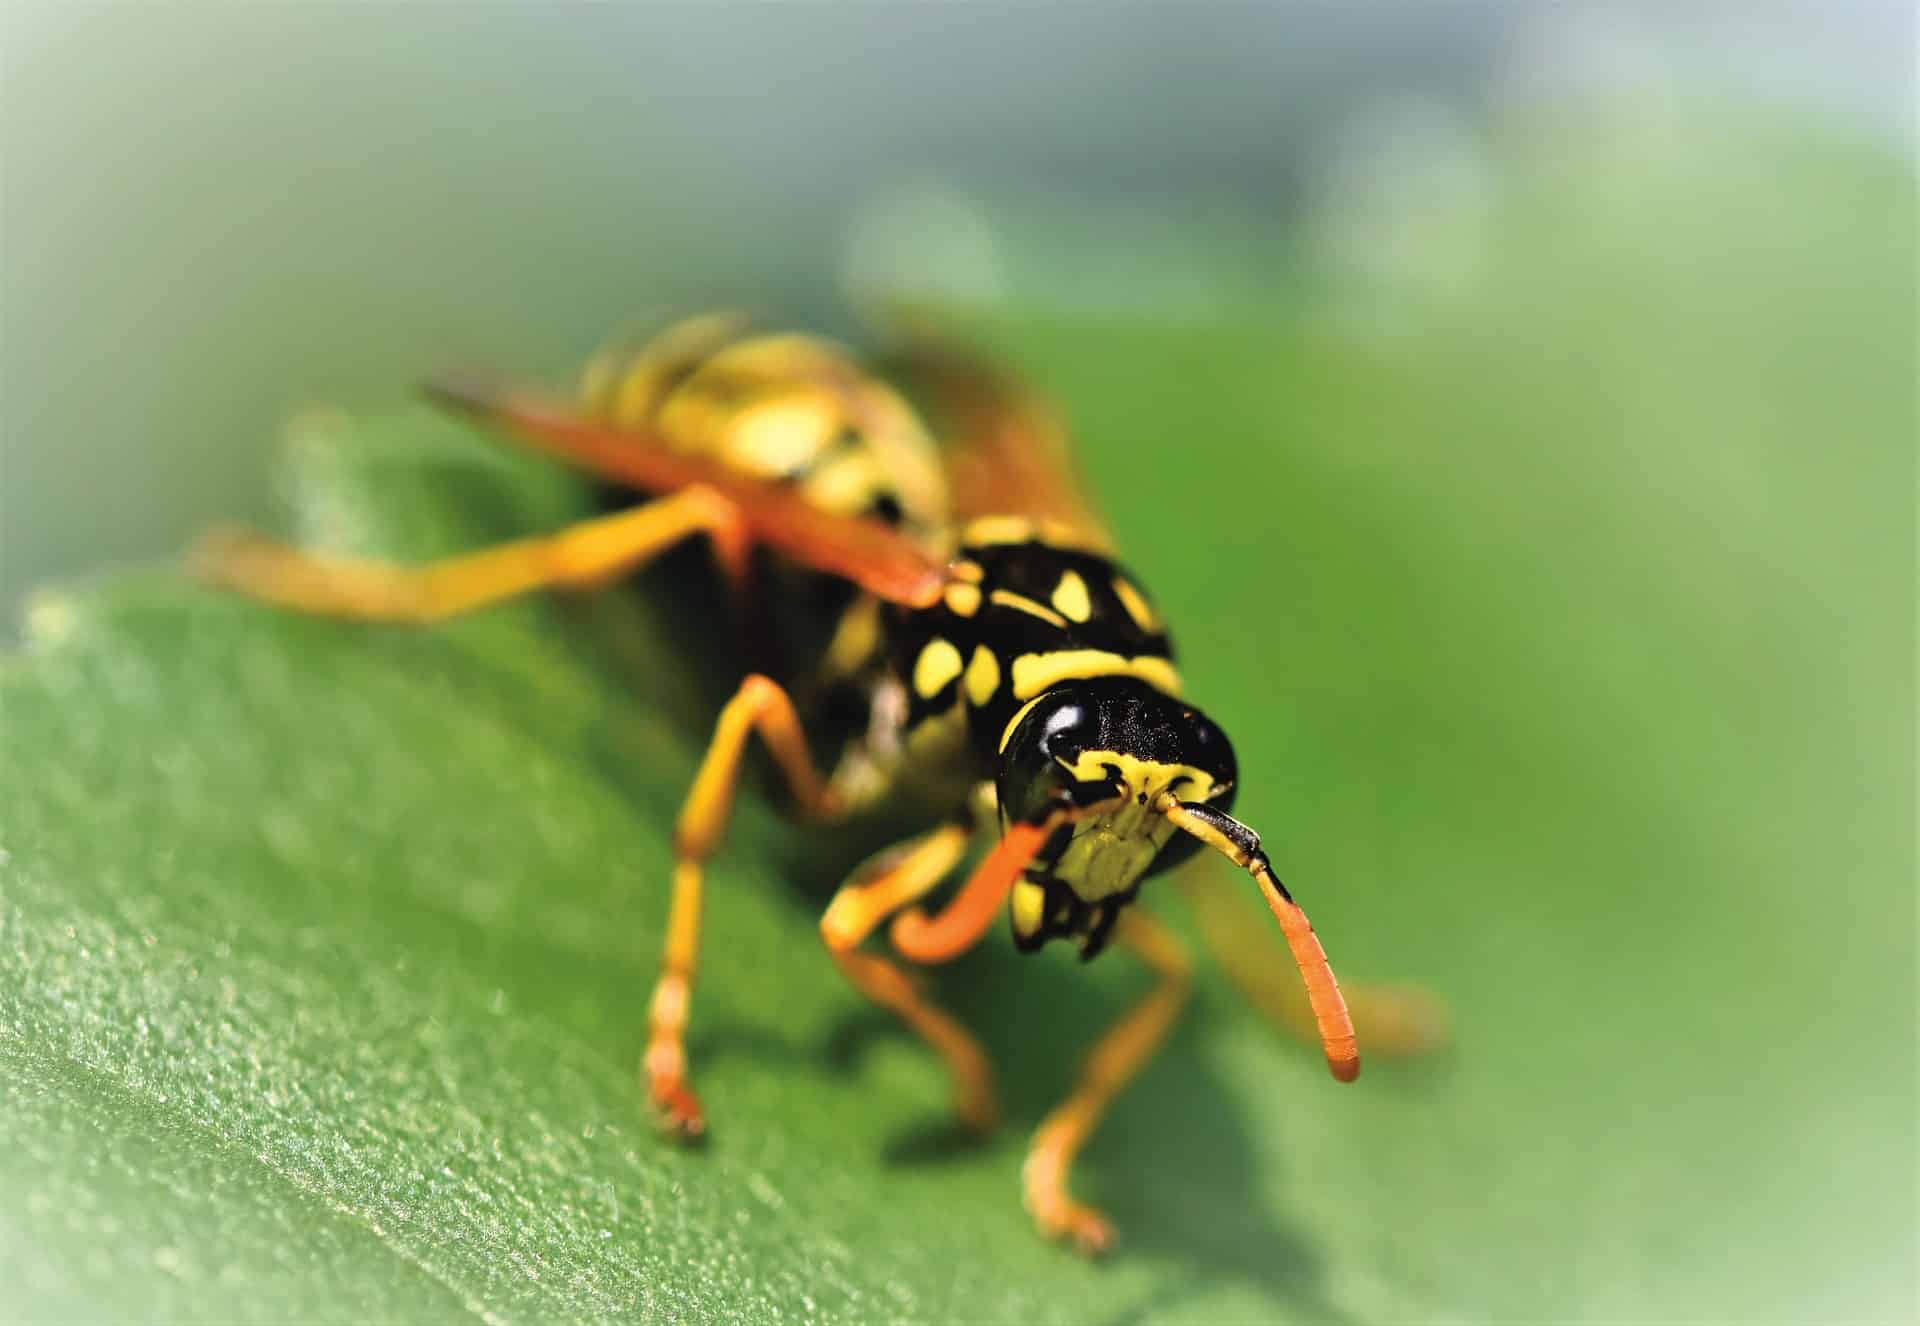 Wespenstich homöopathisch behandeln Bild von Ralph auf Pixabay